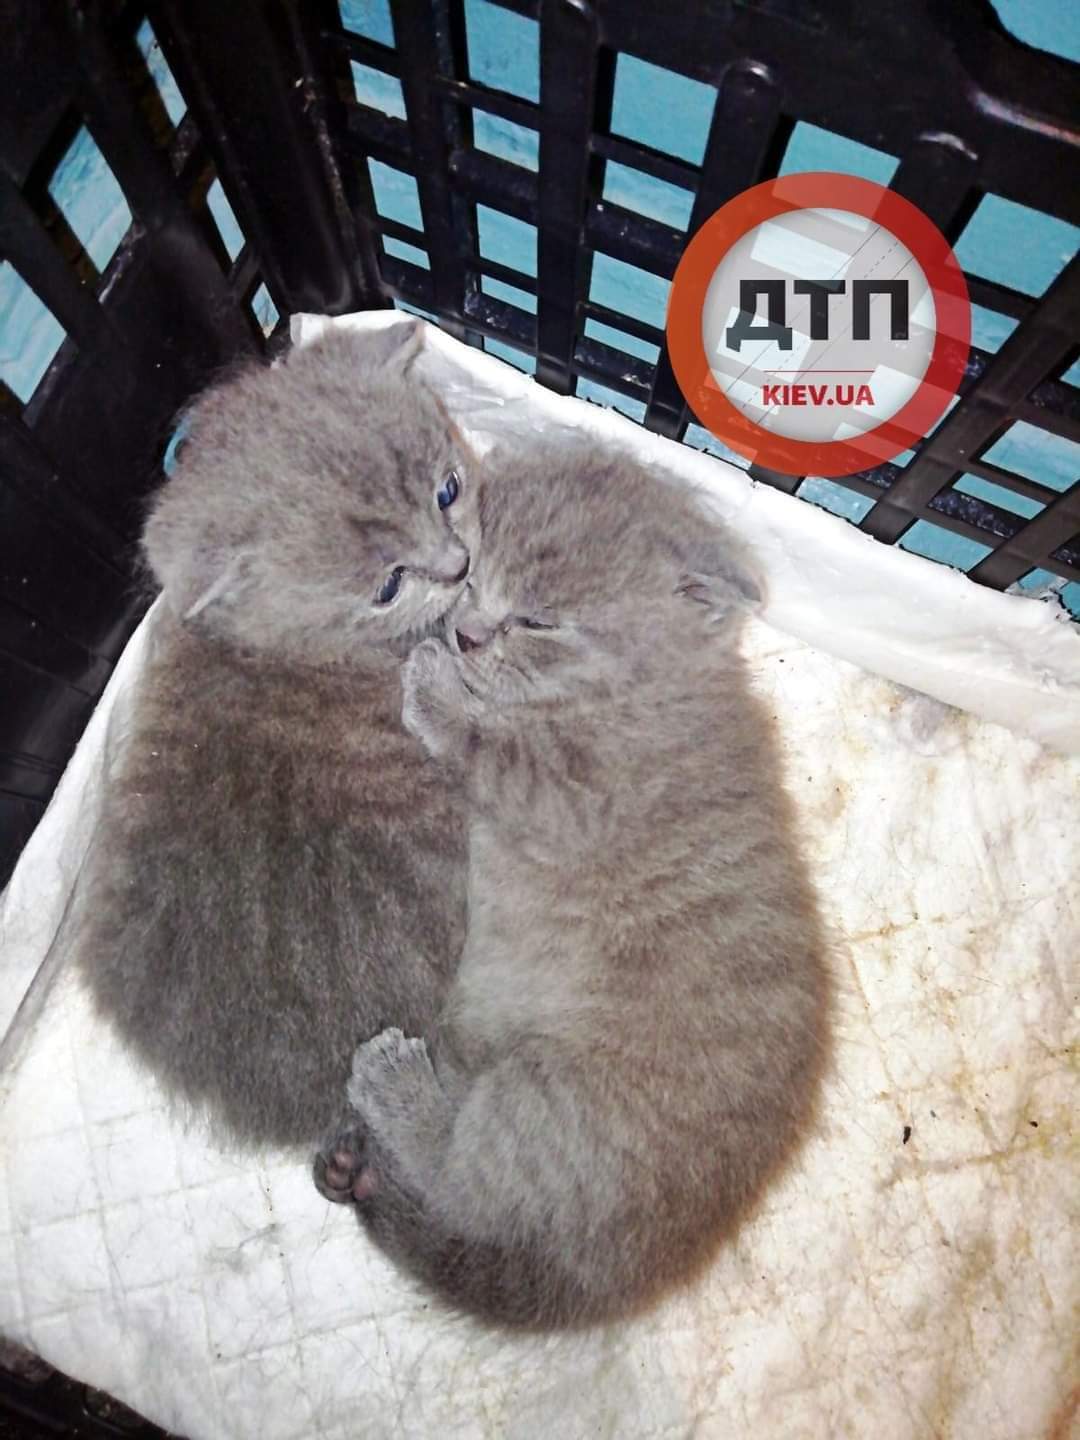 Спасённые в ходе операции беременная кошка с котятами растут как на дрожжах